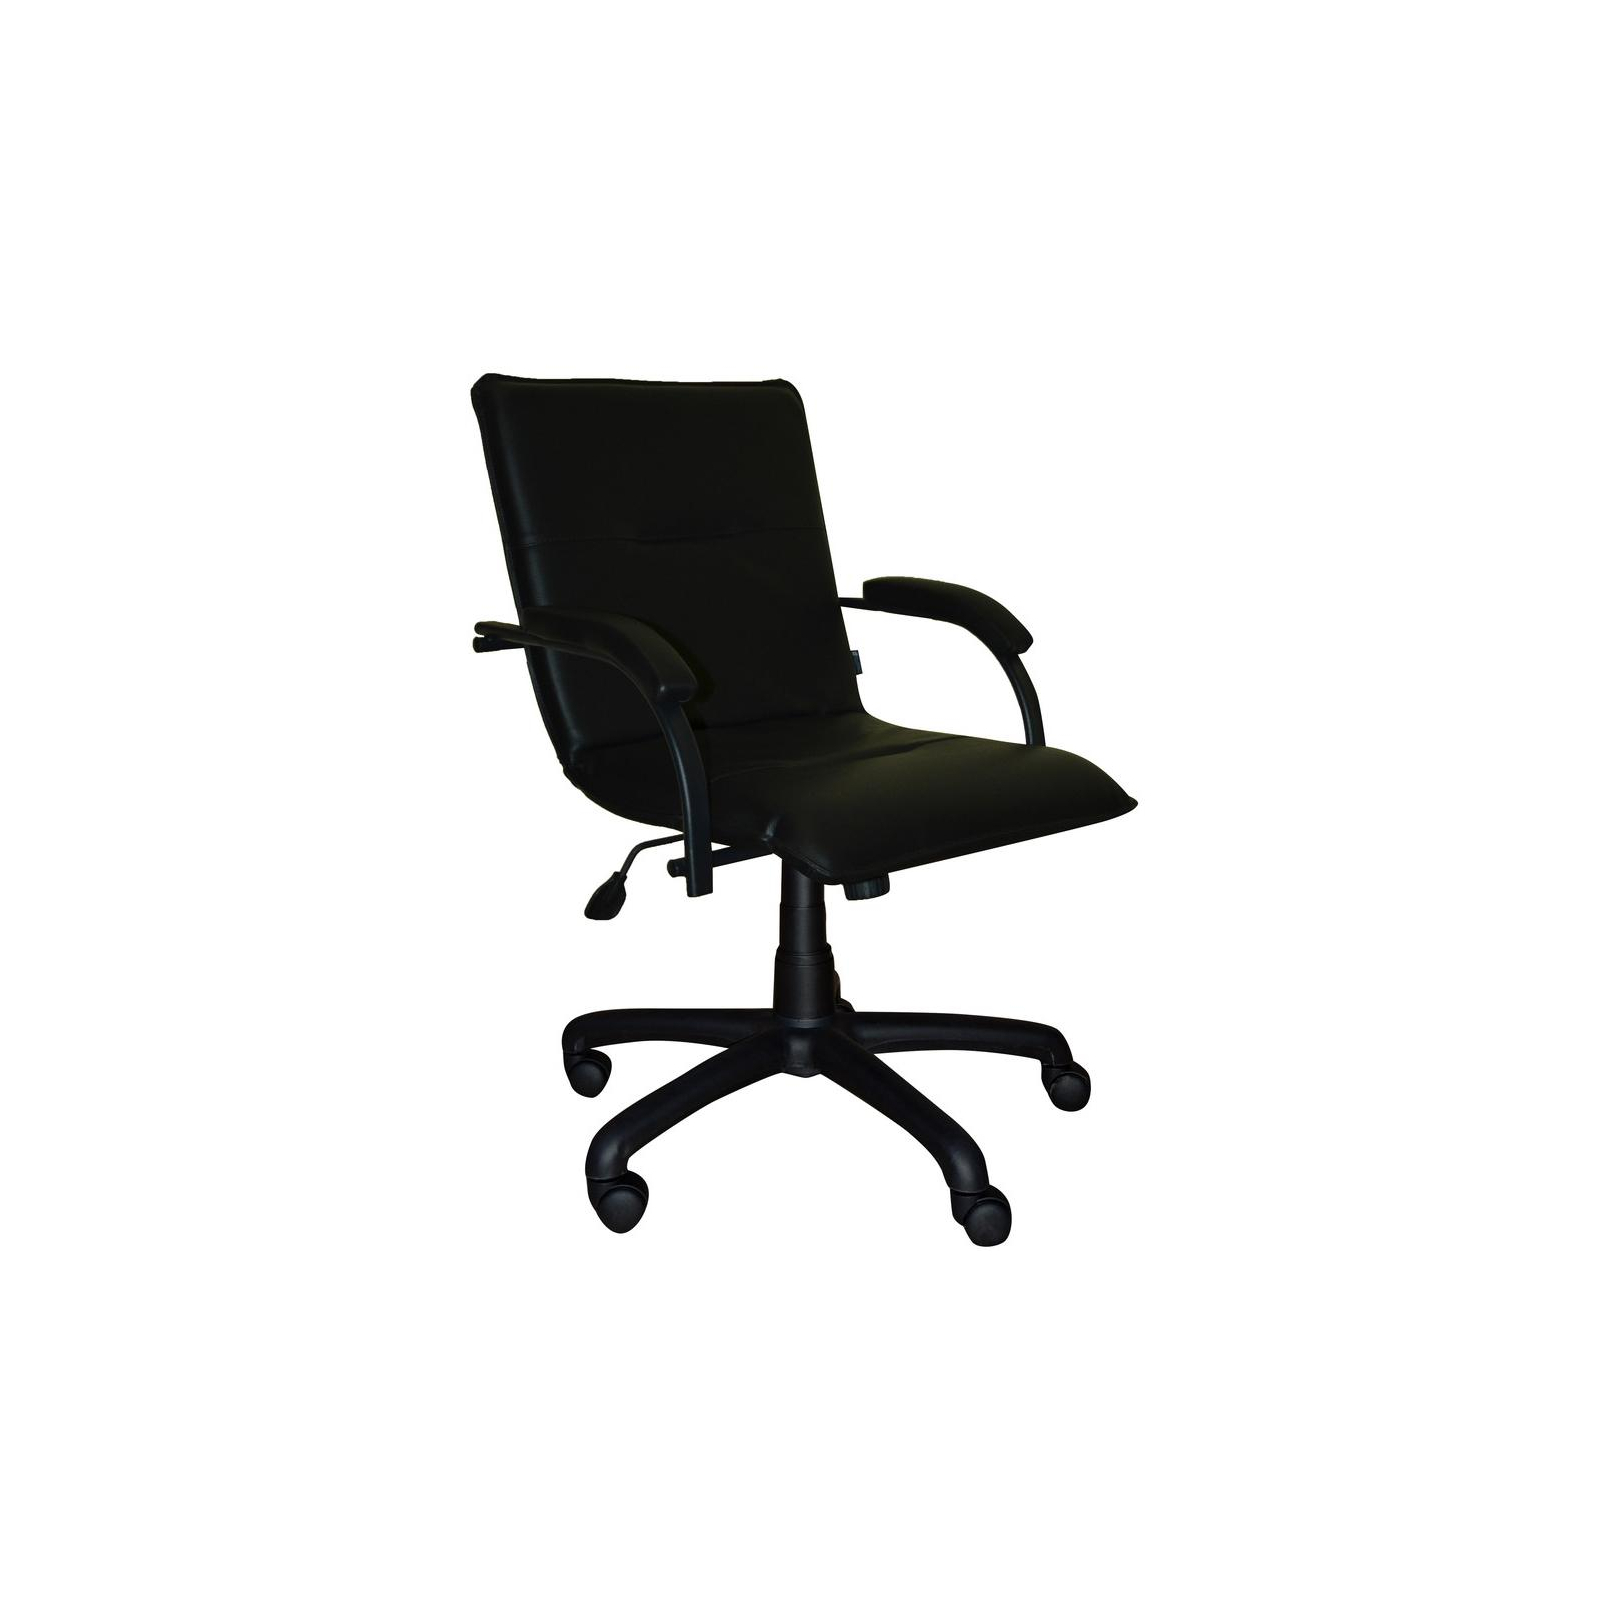 Офісне крісло Примтекс плюс Samba black GTP CZ-3 Black (Samba black GTP CZ-3)